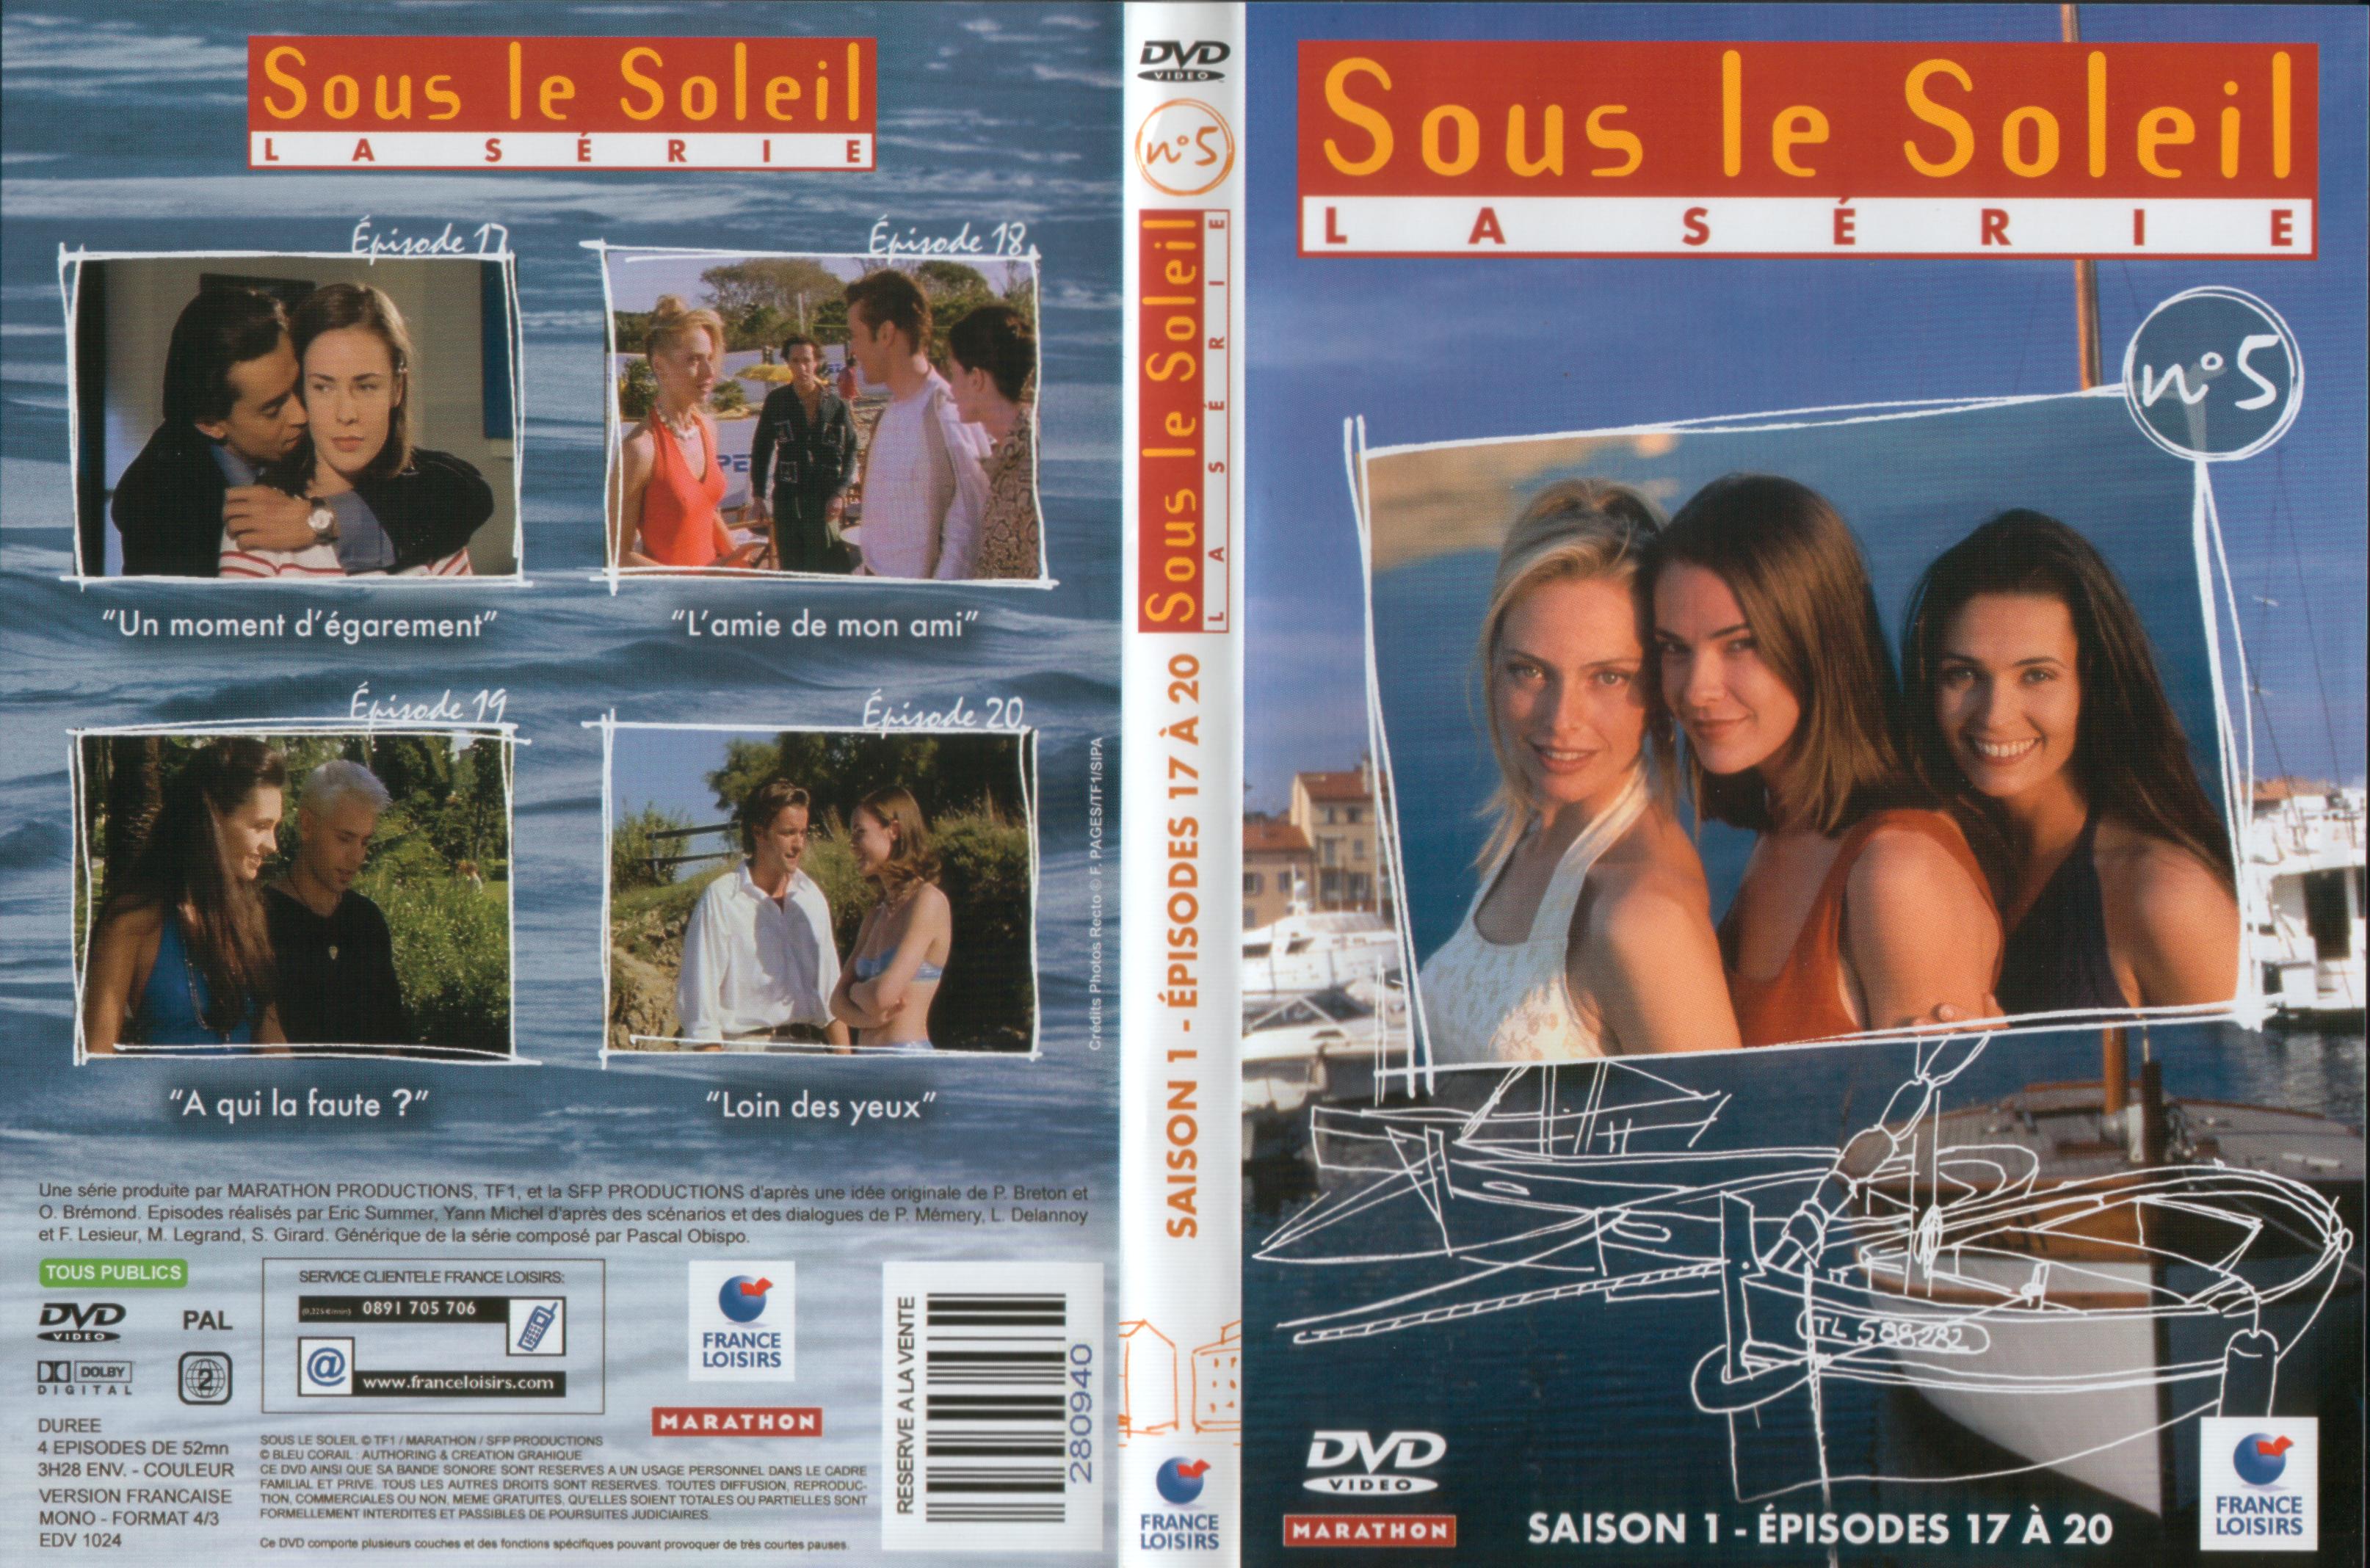 Jaquette DVD Sous le soleil saison 1 vol 5